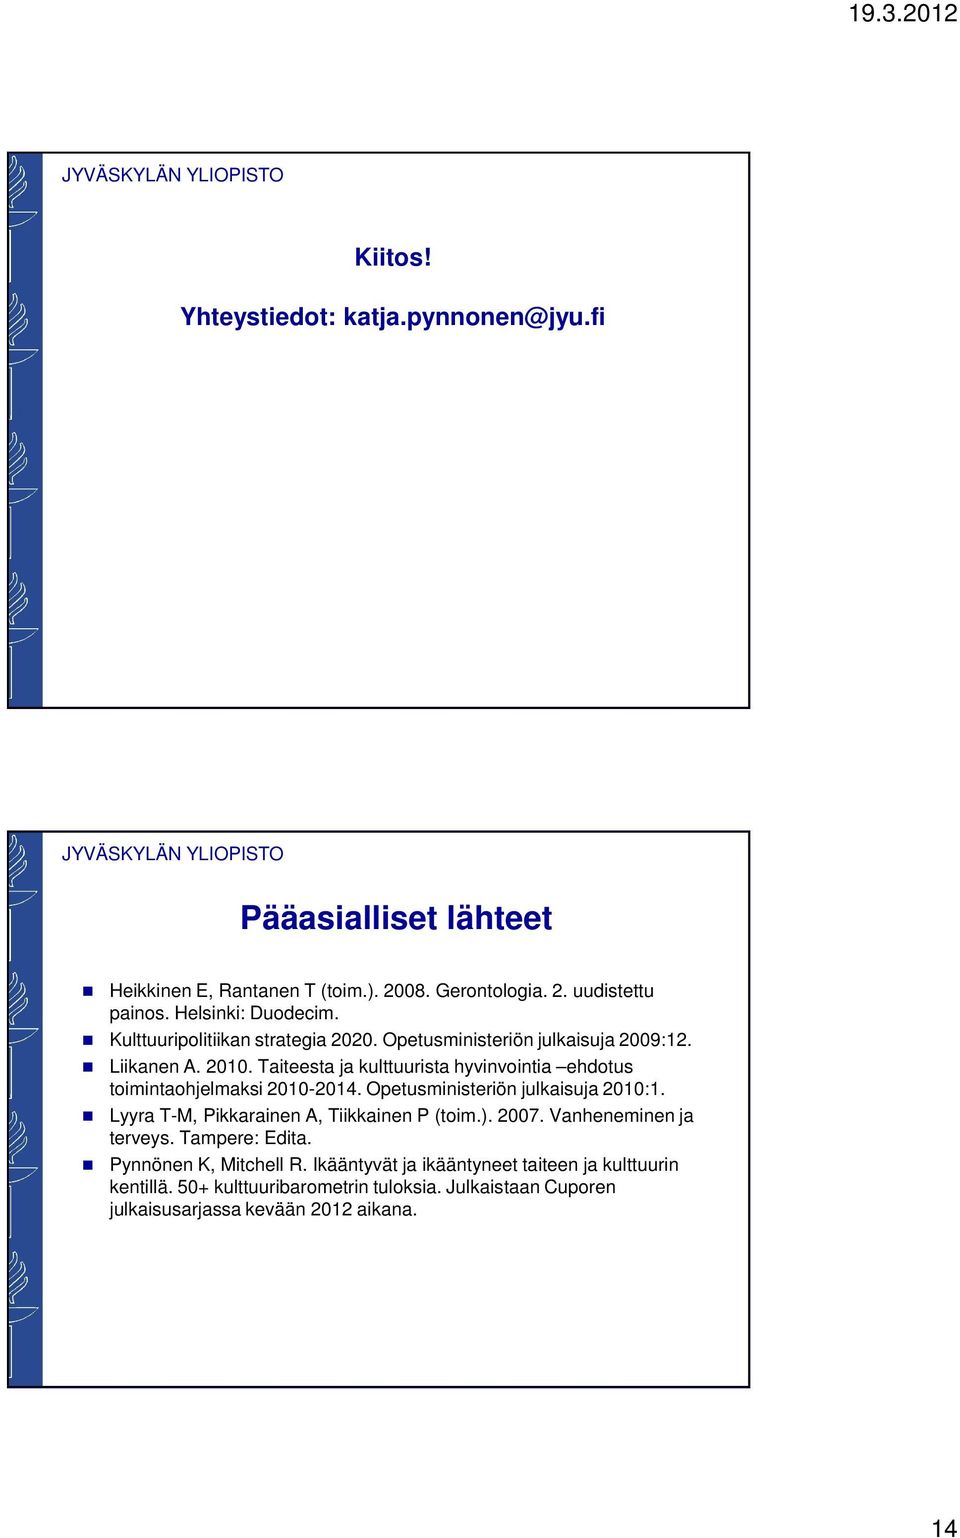 Taiteesta ja kulttuurista hyvinvointia ehdotus toimintaohjelmaksi 2010-2014. Opetusministeriön julkaisuja 2010:1. Lyyra T-M, Pikkarainen A, Tiikkainen P (toim.